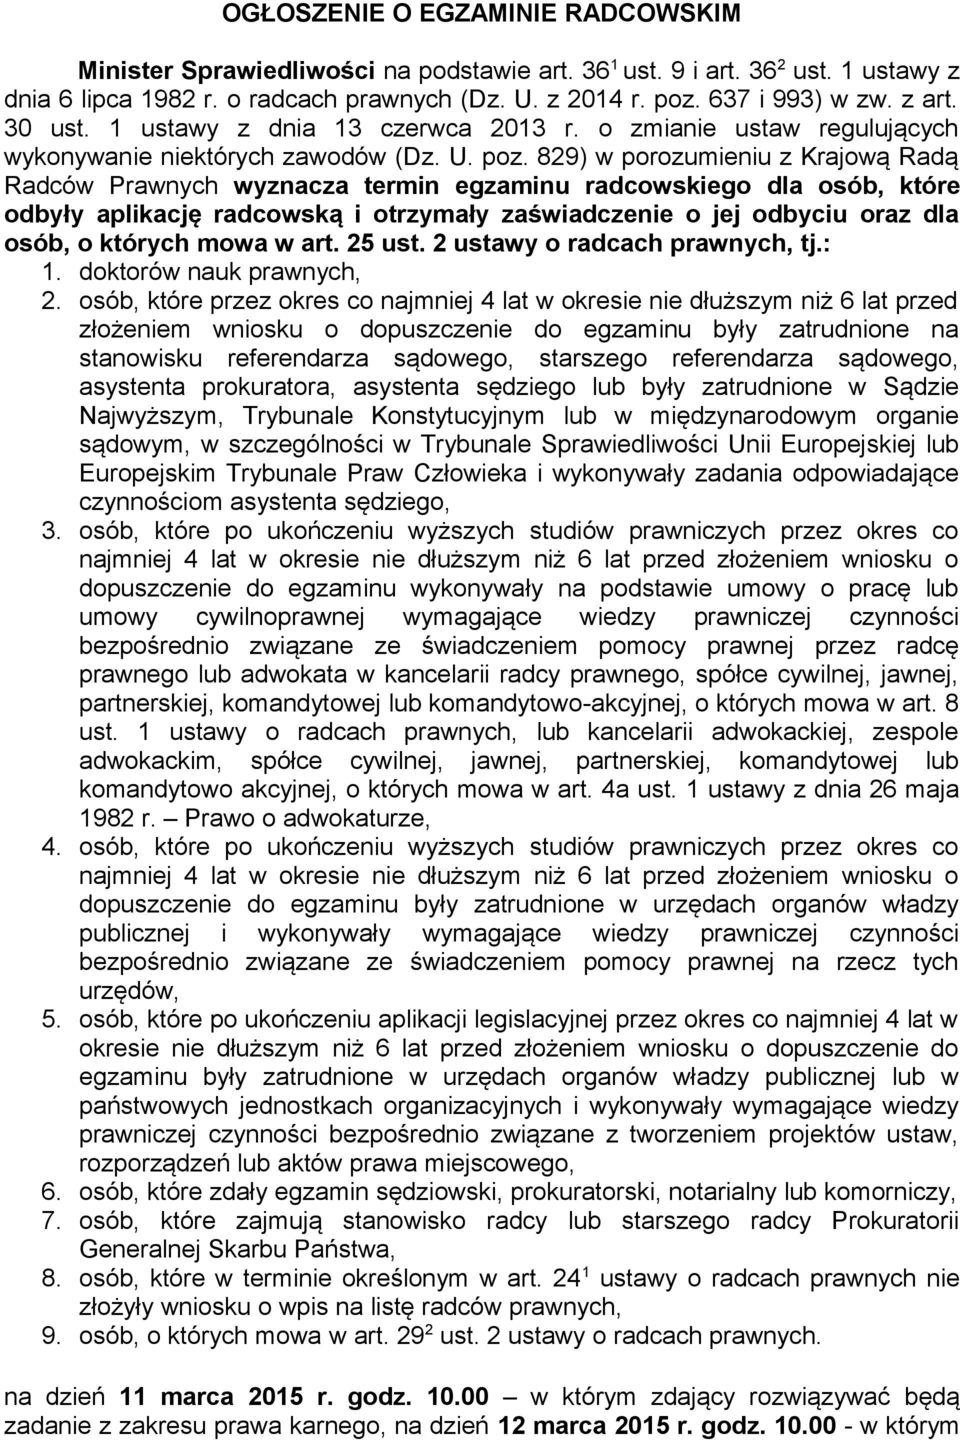 829) w porozumieniu z Krajową Radą Radców Prawnych wyznacza termin egzaminu radcowskiego dla osób, które odbyły aplikację radcowską i otrzymały zaświadczenie o jej odbyciu oraz dla osób, o których